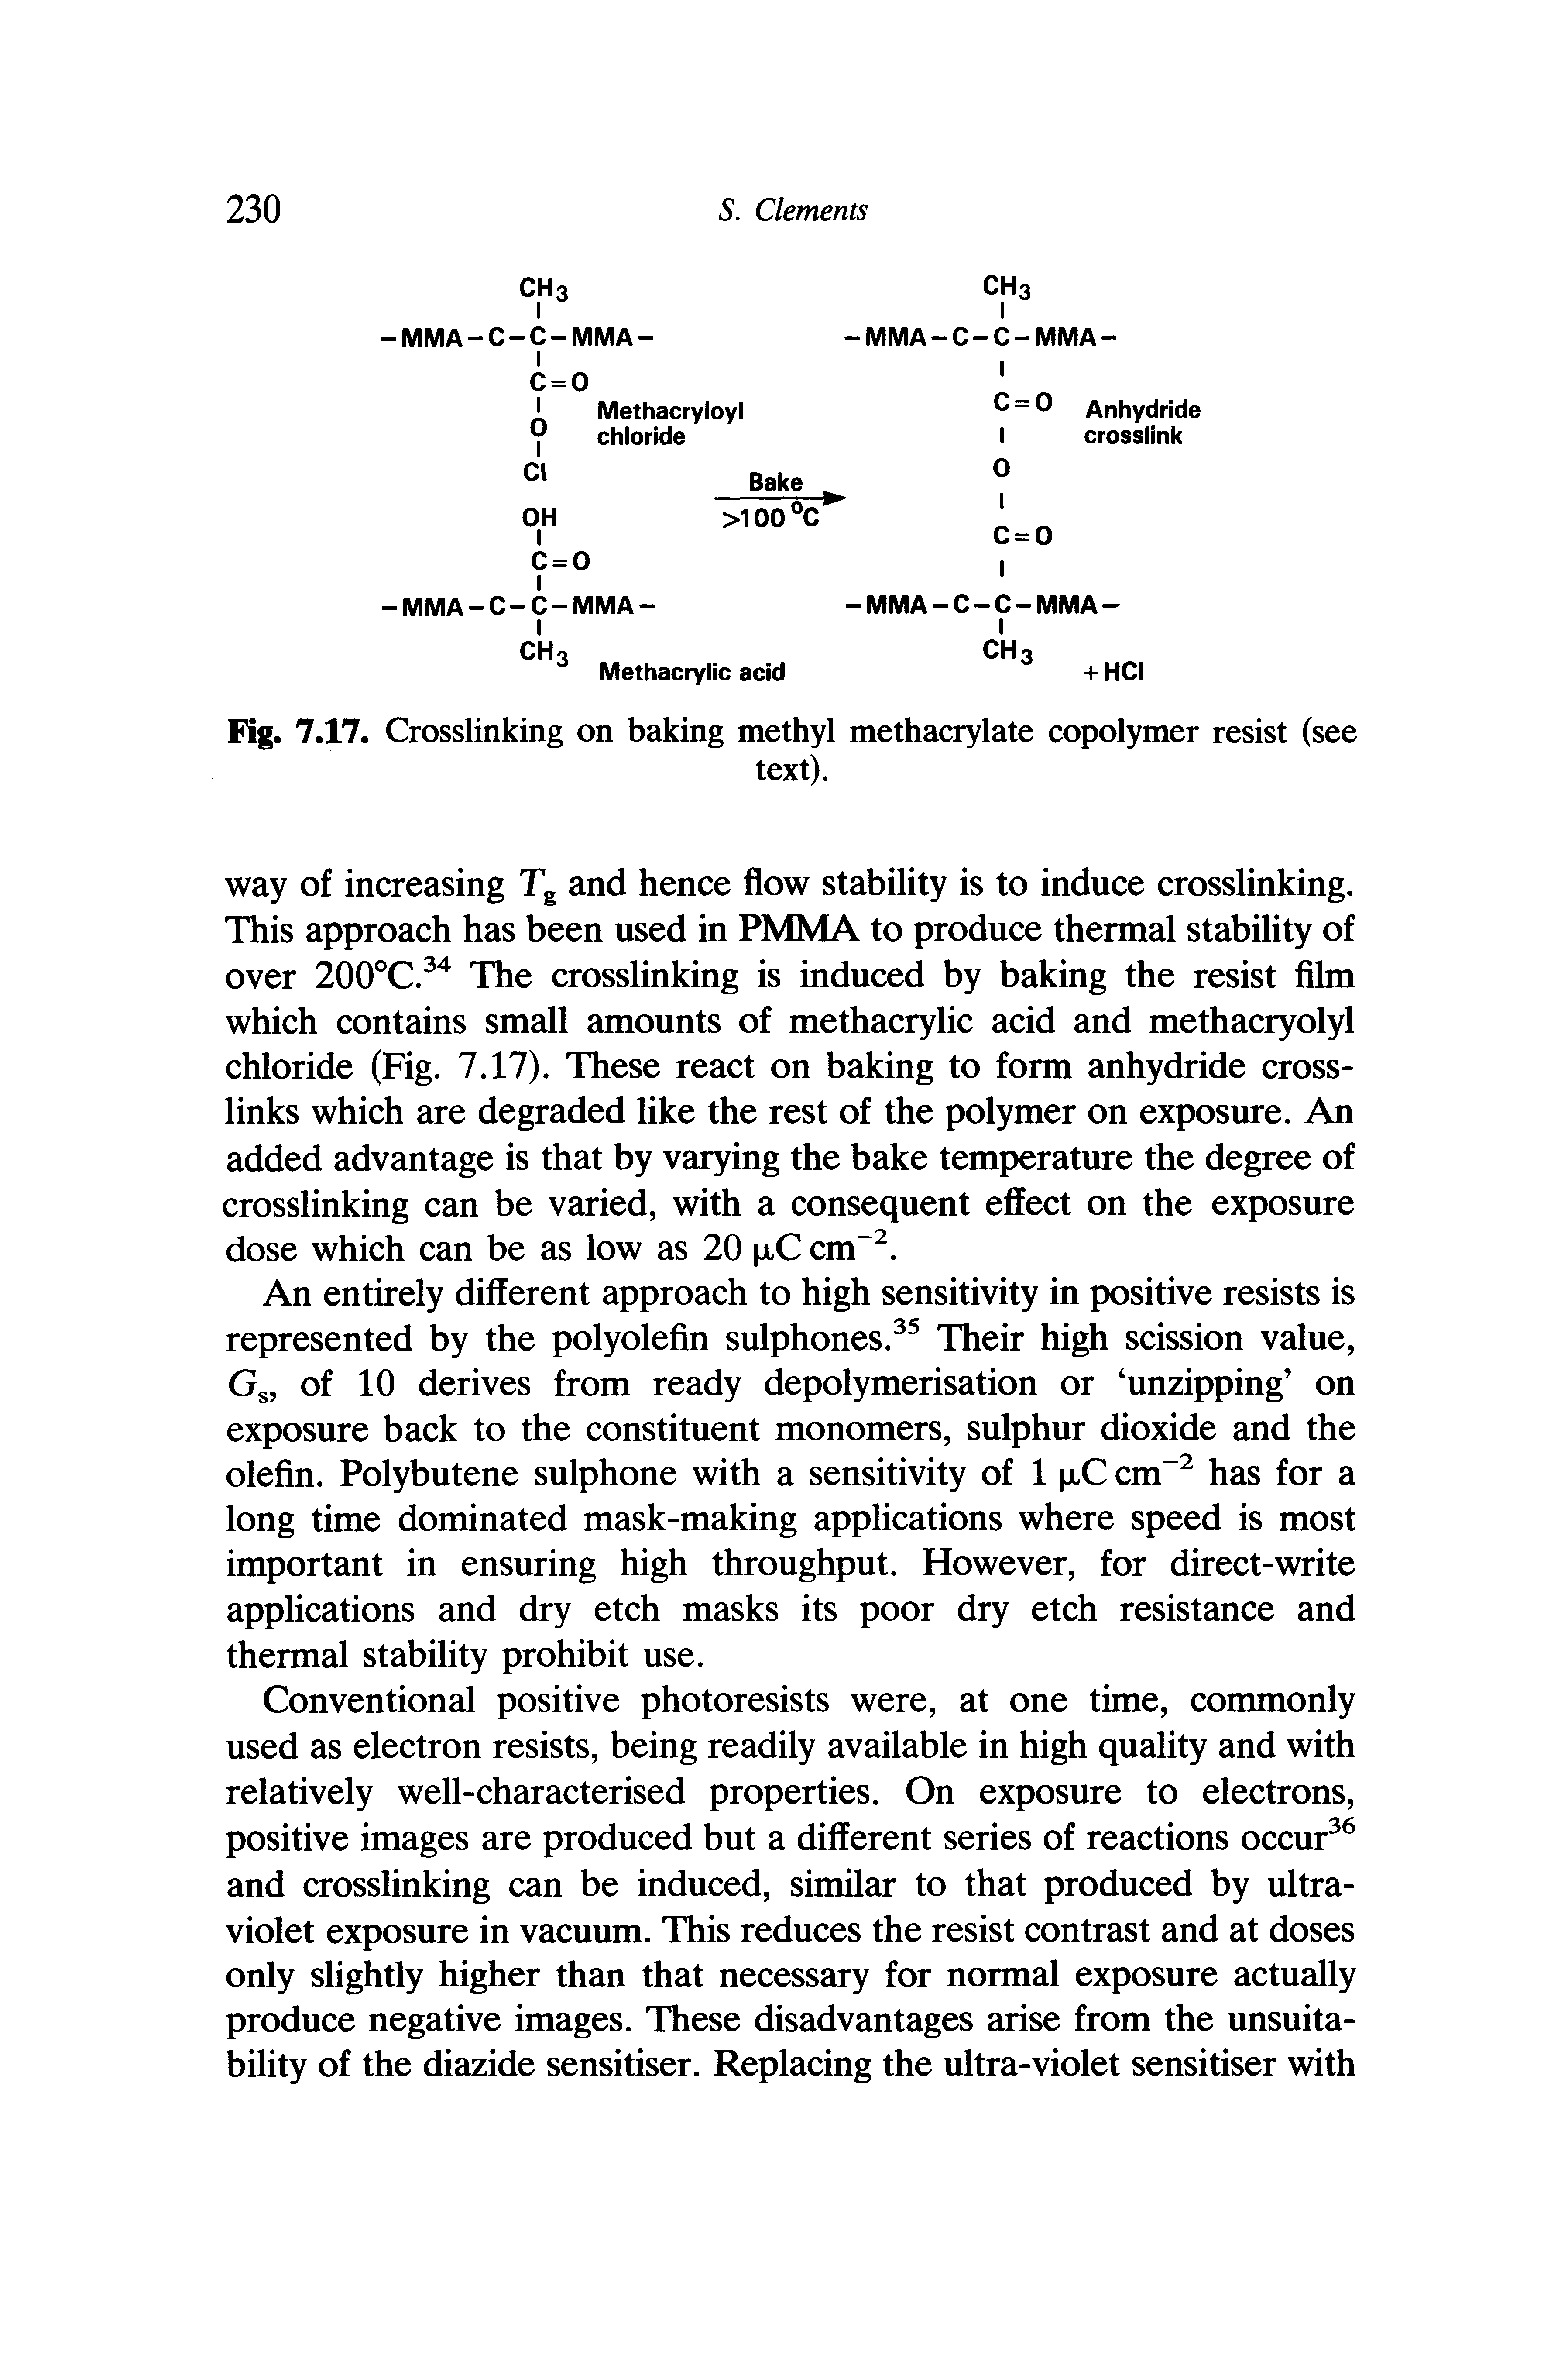 Fig. 7.17. Crosslinking on baking methyl methacrylate copolymer resist (see...